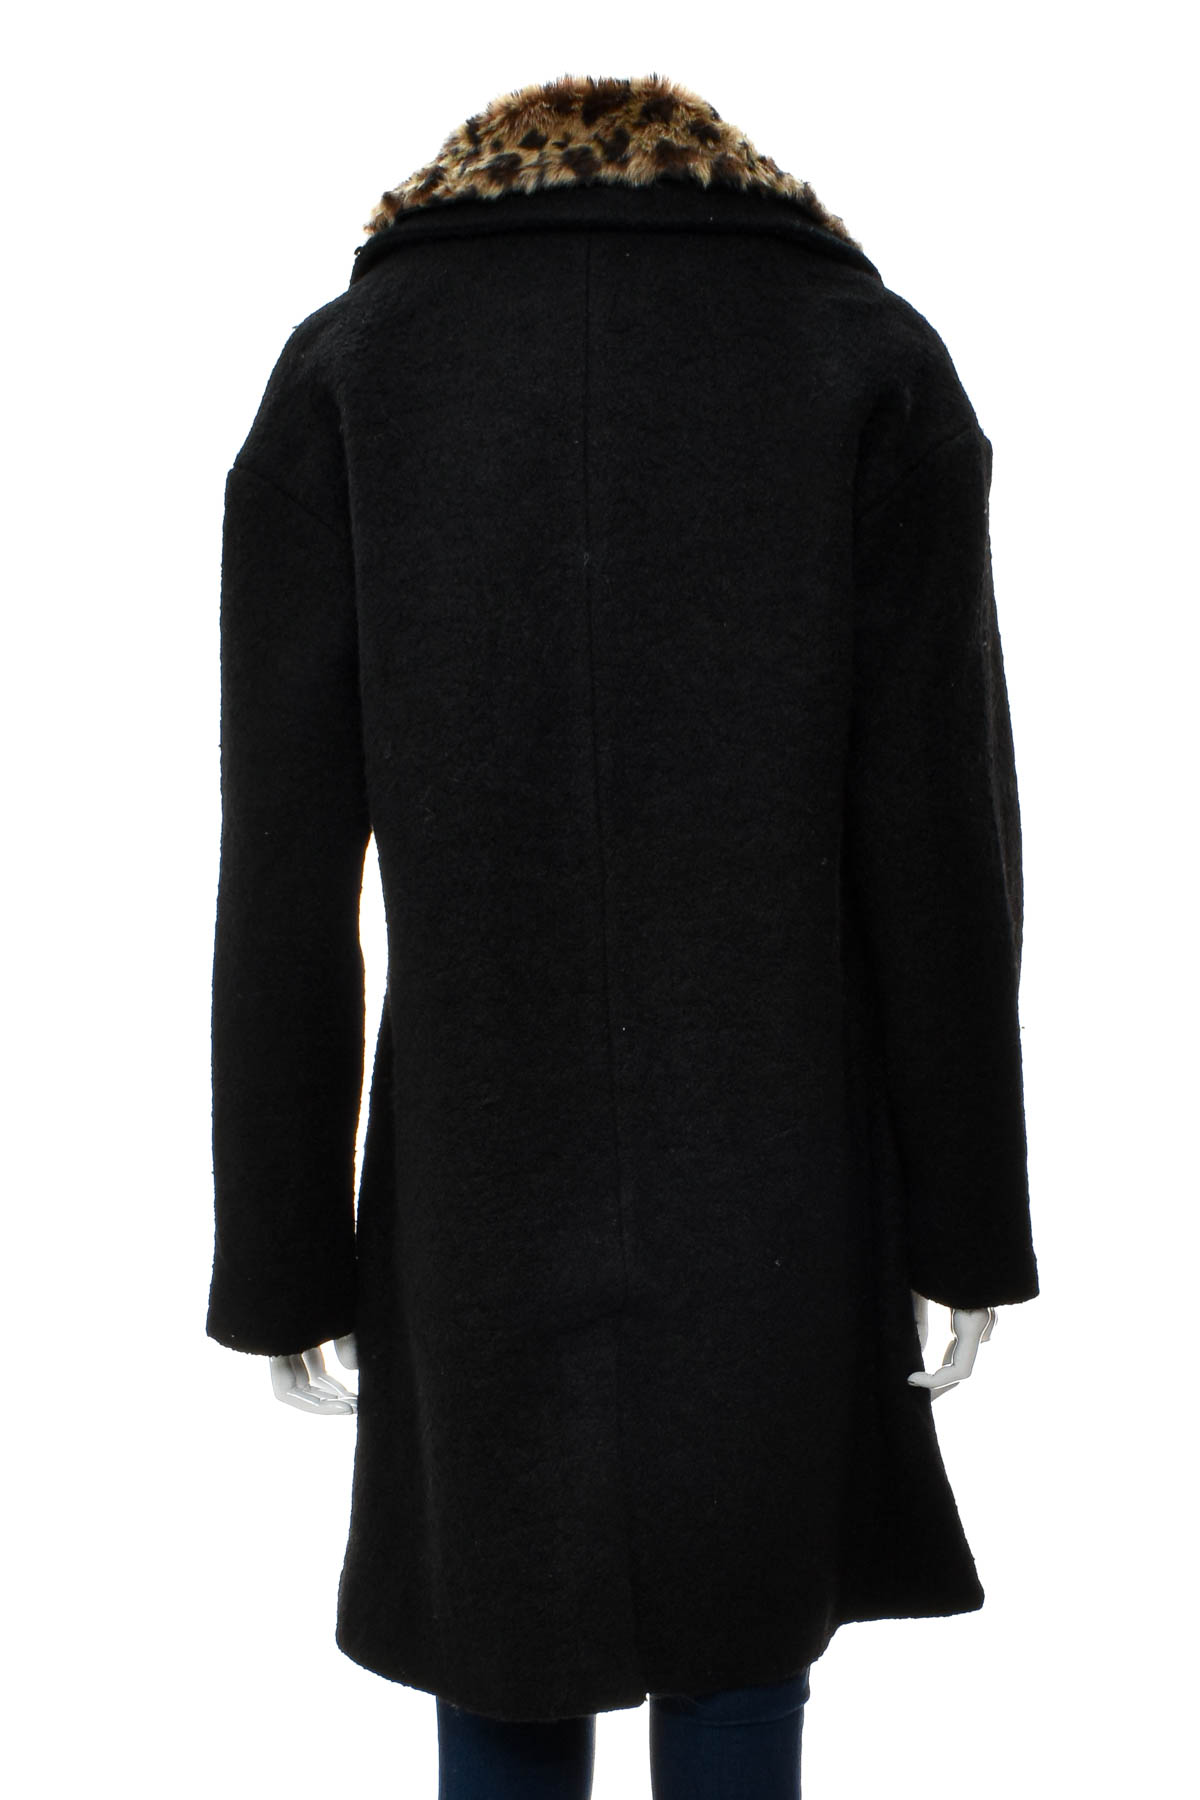 Women's coat - Bella Loren - 1